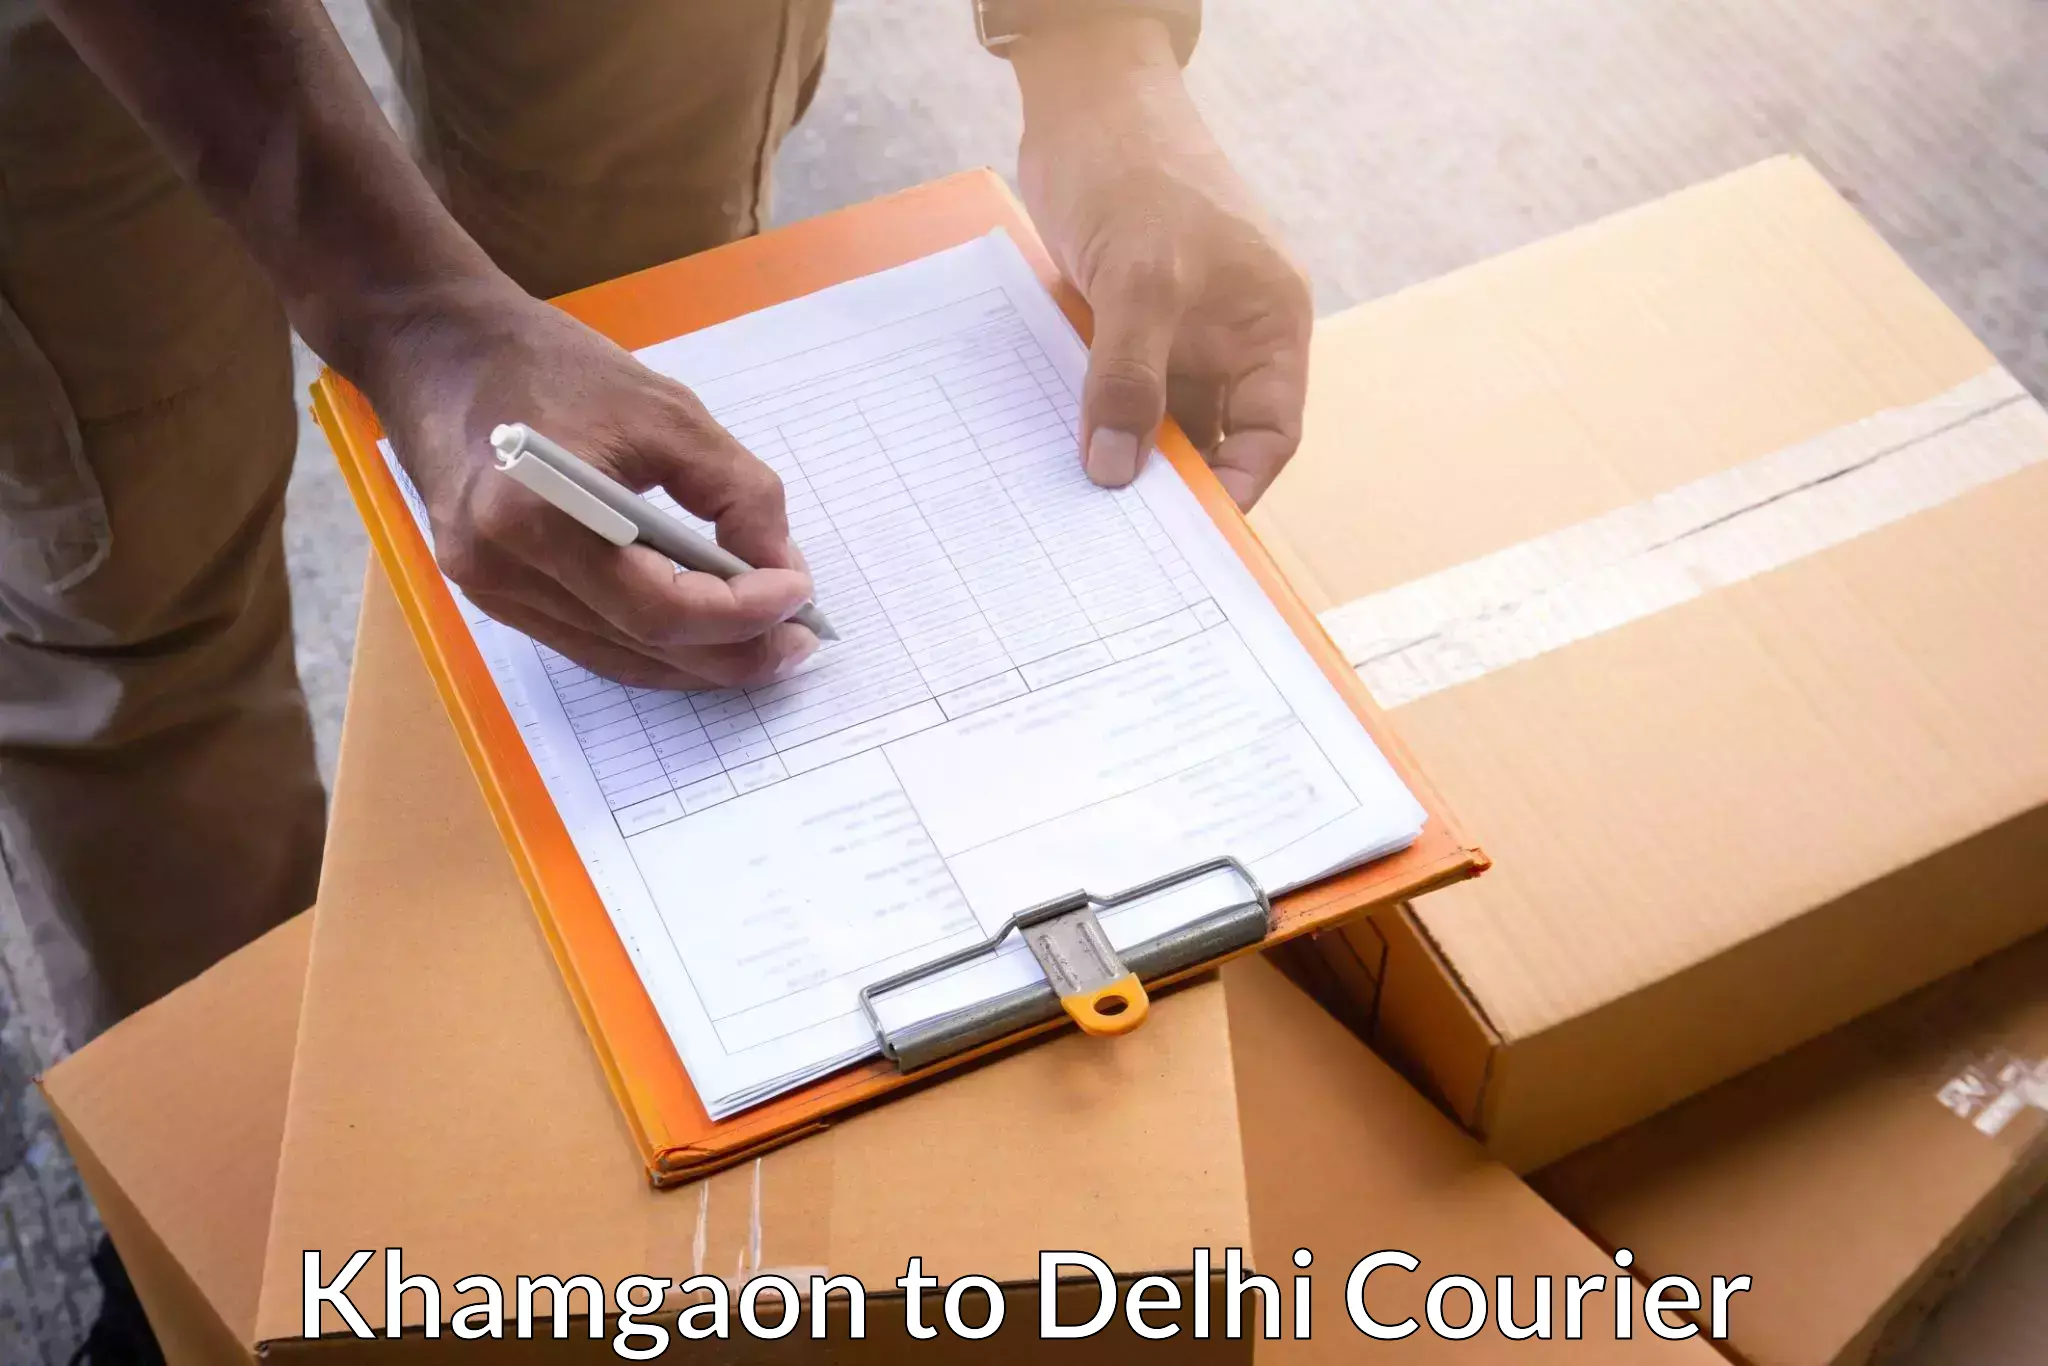 Courier insurance Khamgaon to Jamia Millia Islamia New Delhi